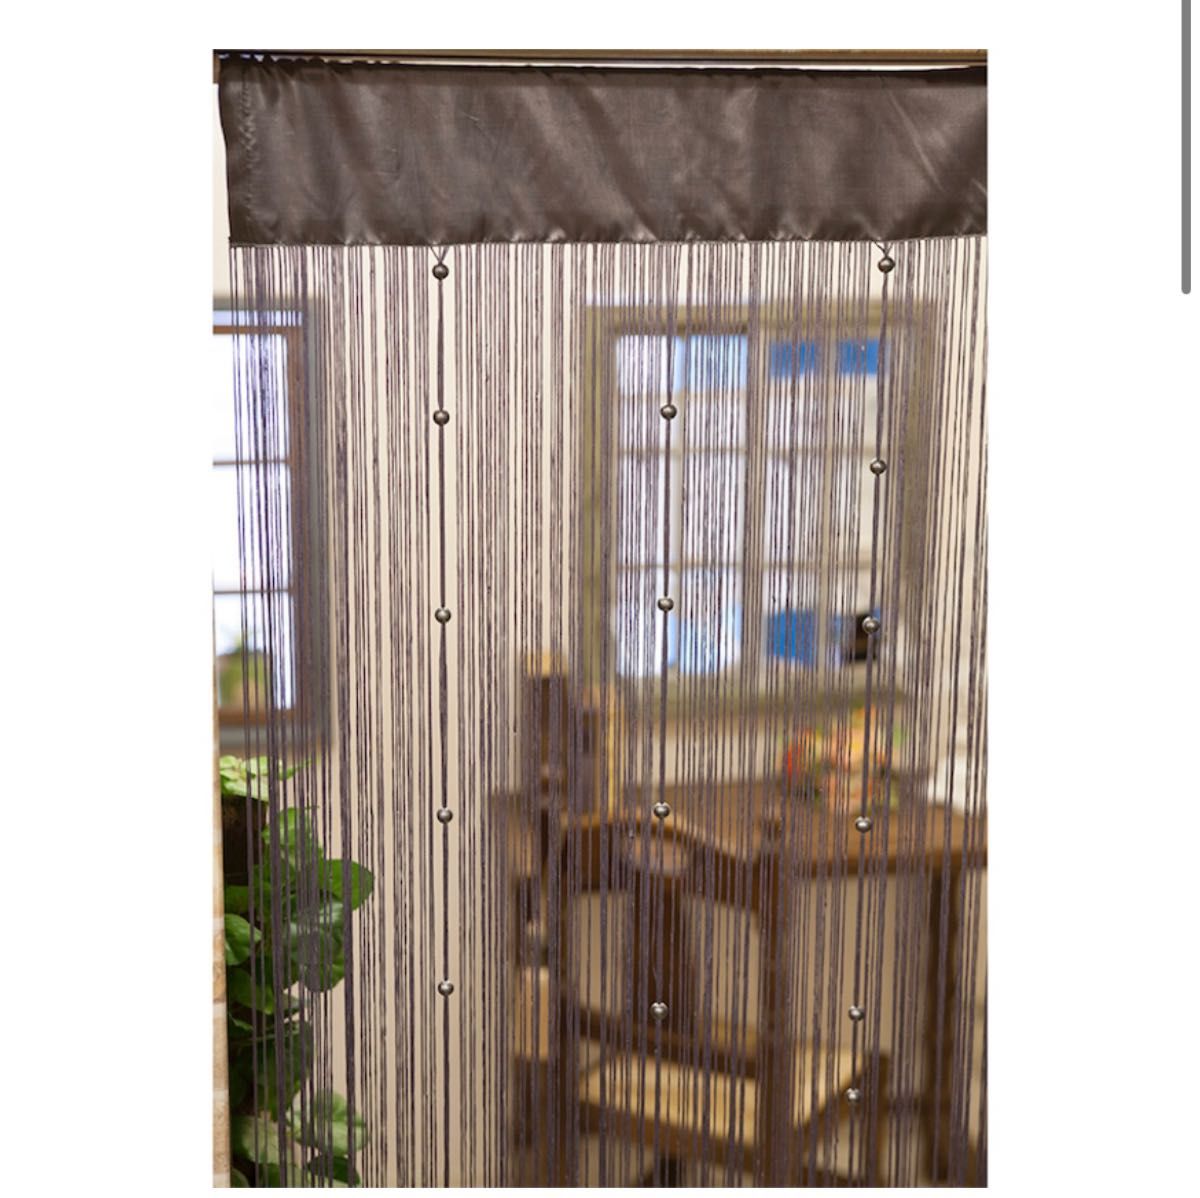 ストリングカーテン[パール]グレー 窓辺やお部屋の間仕切りに開放感のあるカーテン